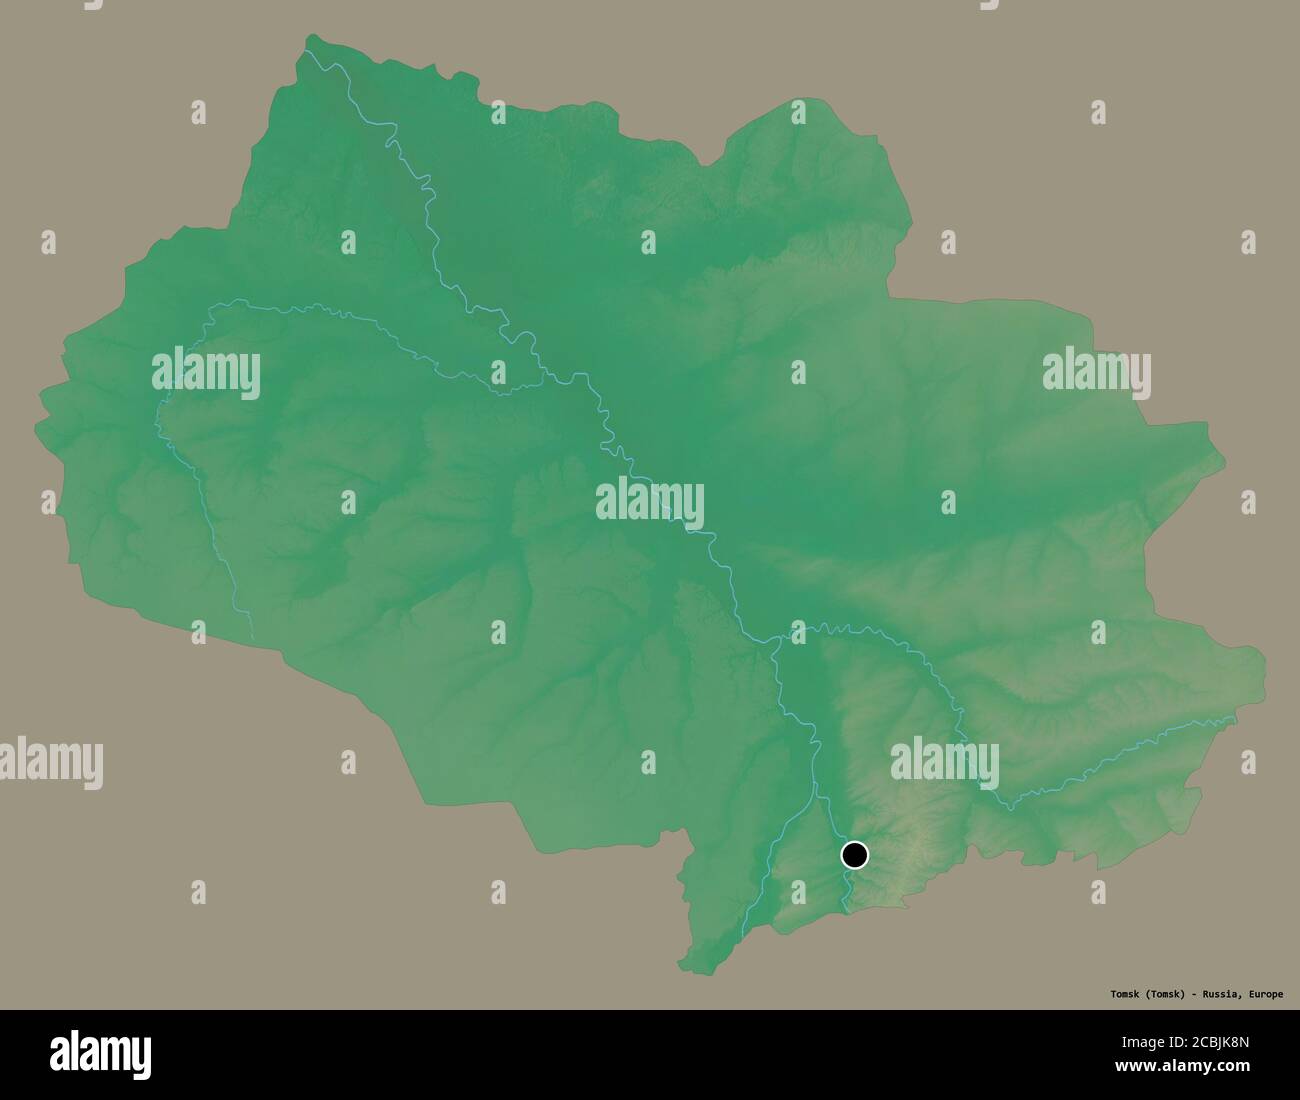 Forme de Tomsk, région de Russie, avec sa capitale isolée sur un fond de couleur unie. Carte topographique de relief. Rendu 3D Banque D'Images